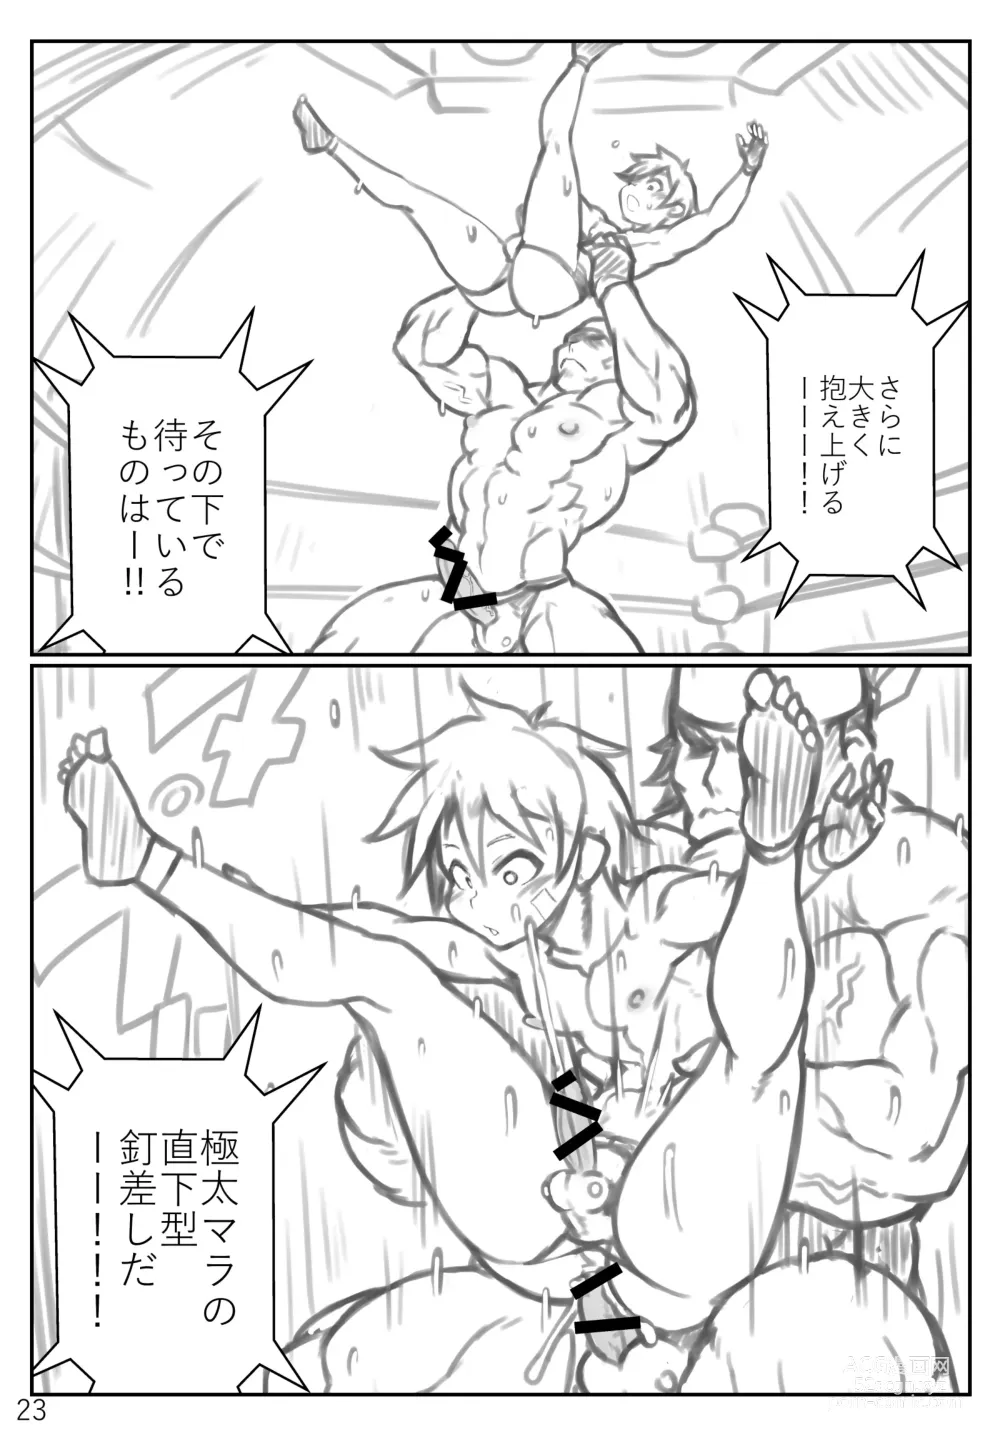 Page 23 of doujinshi Puroresu ♂ no youna nanika